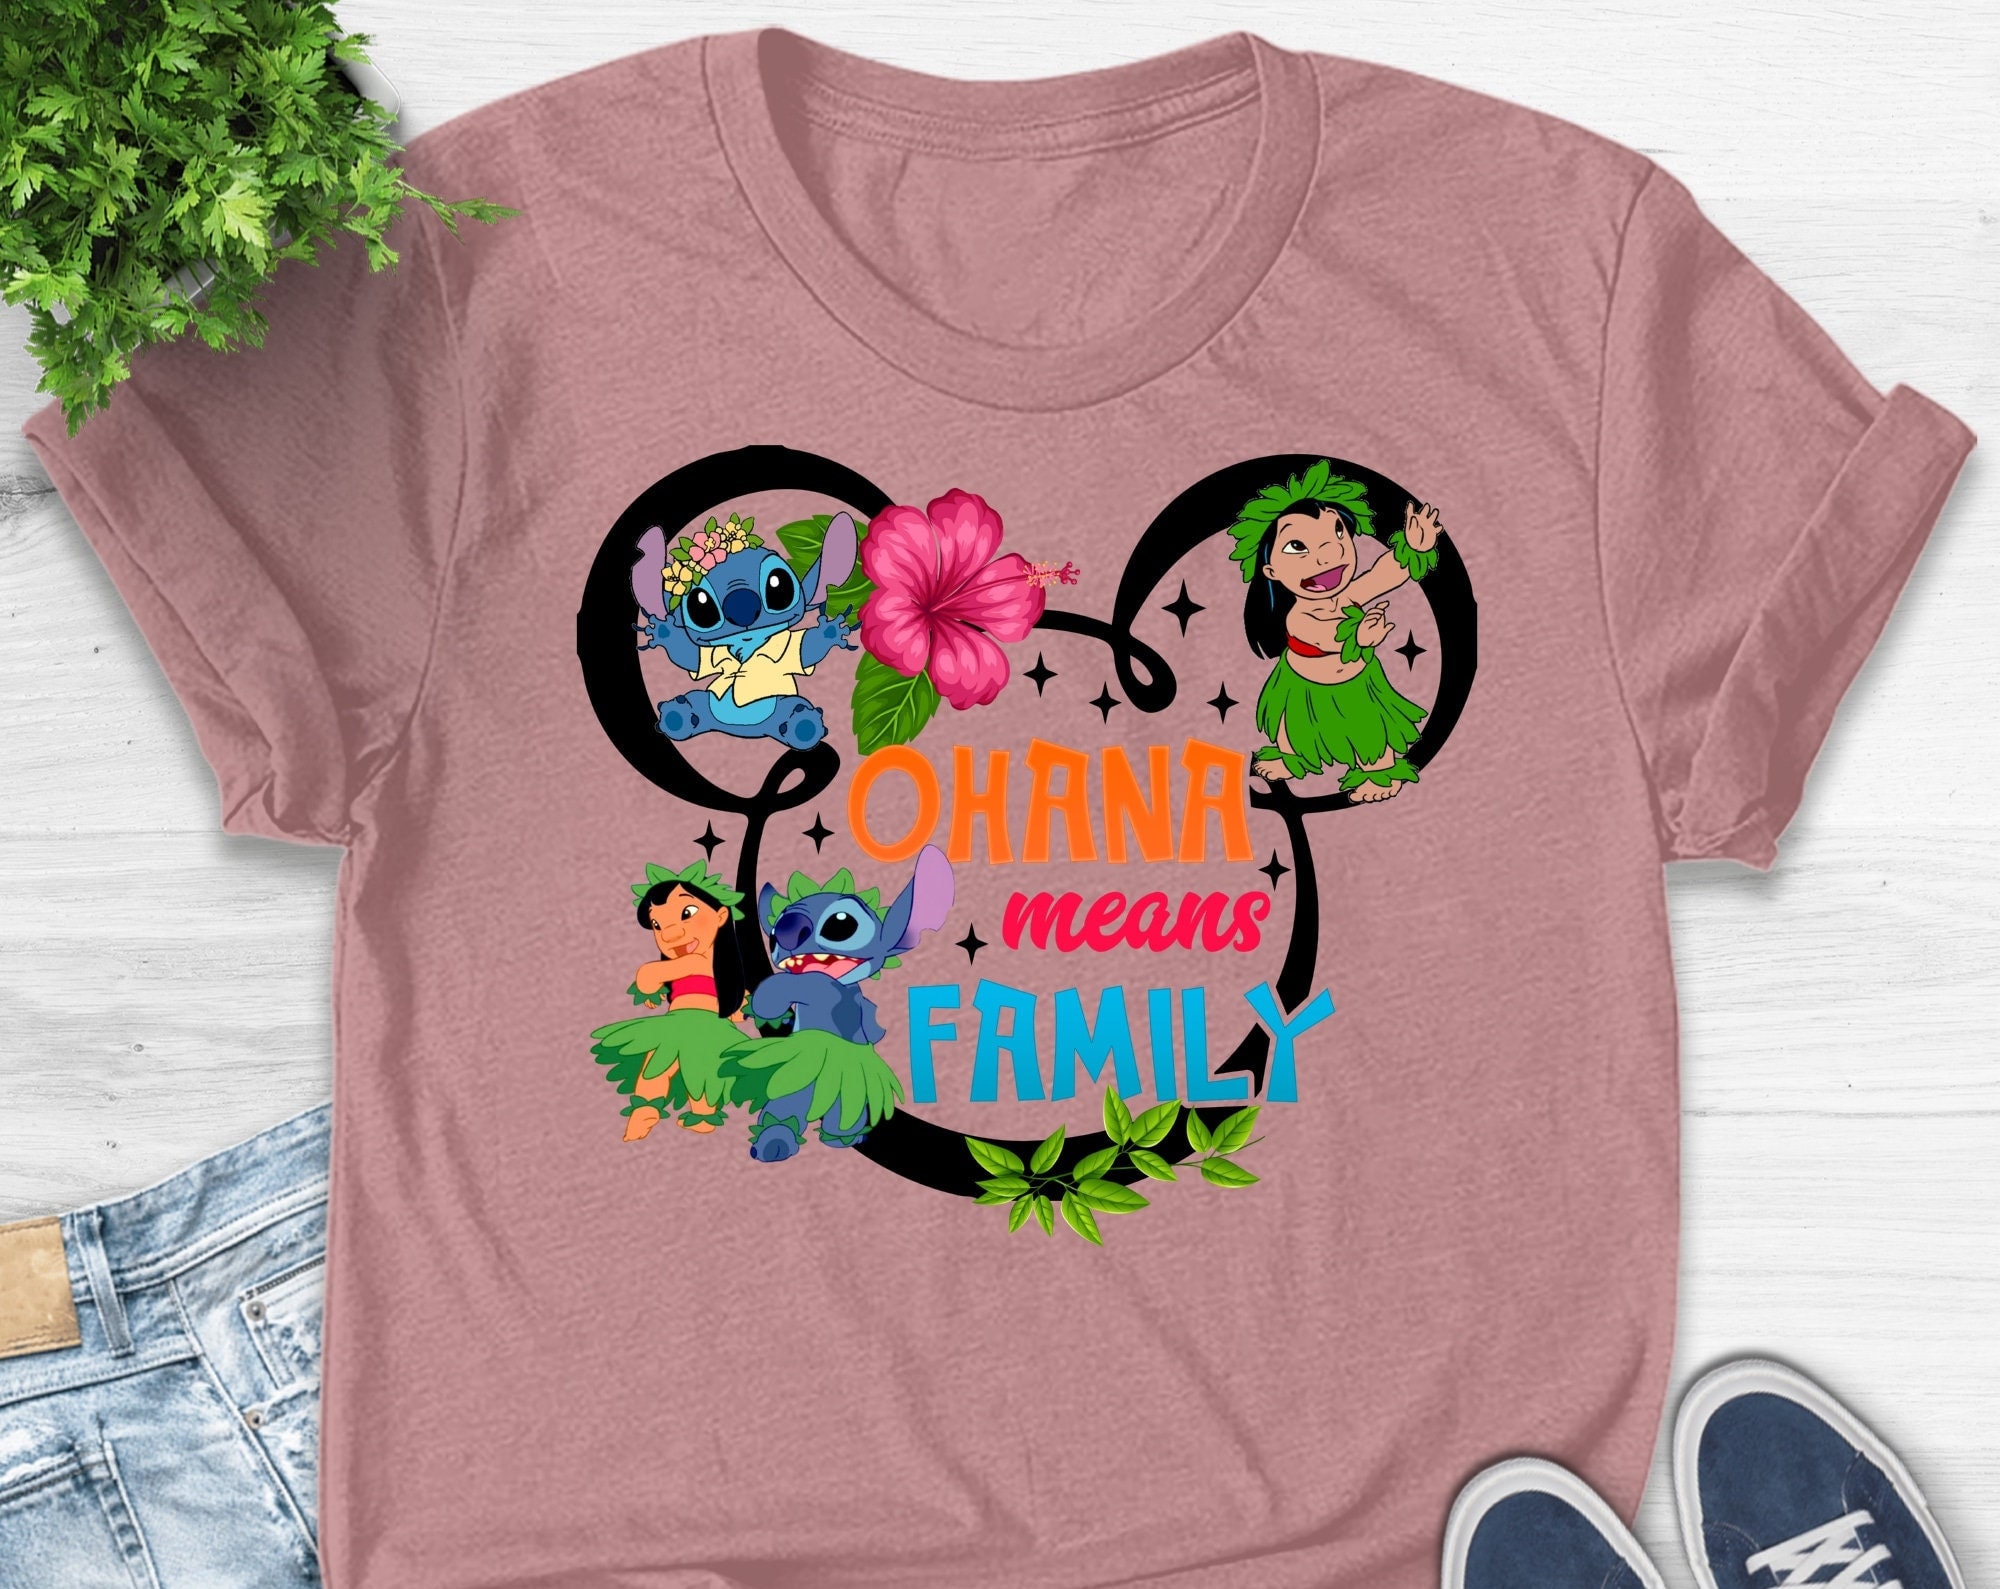 Discover Disney Stitch, Disney Ohana Family, Disney Stitch and Lilo, Disney Family Vacation T-Shirt